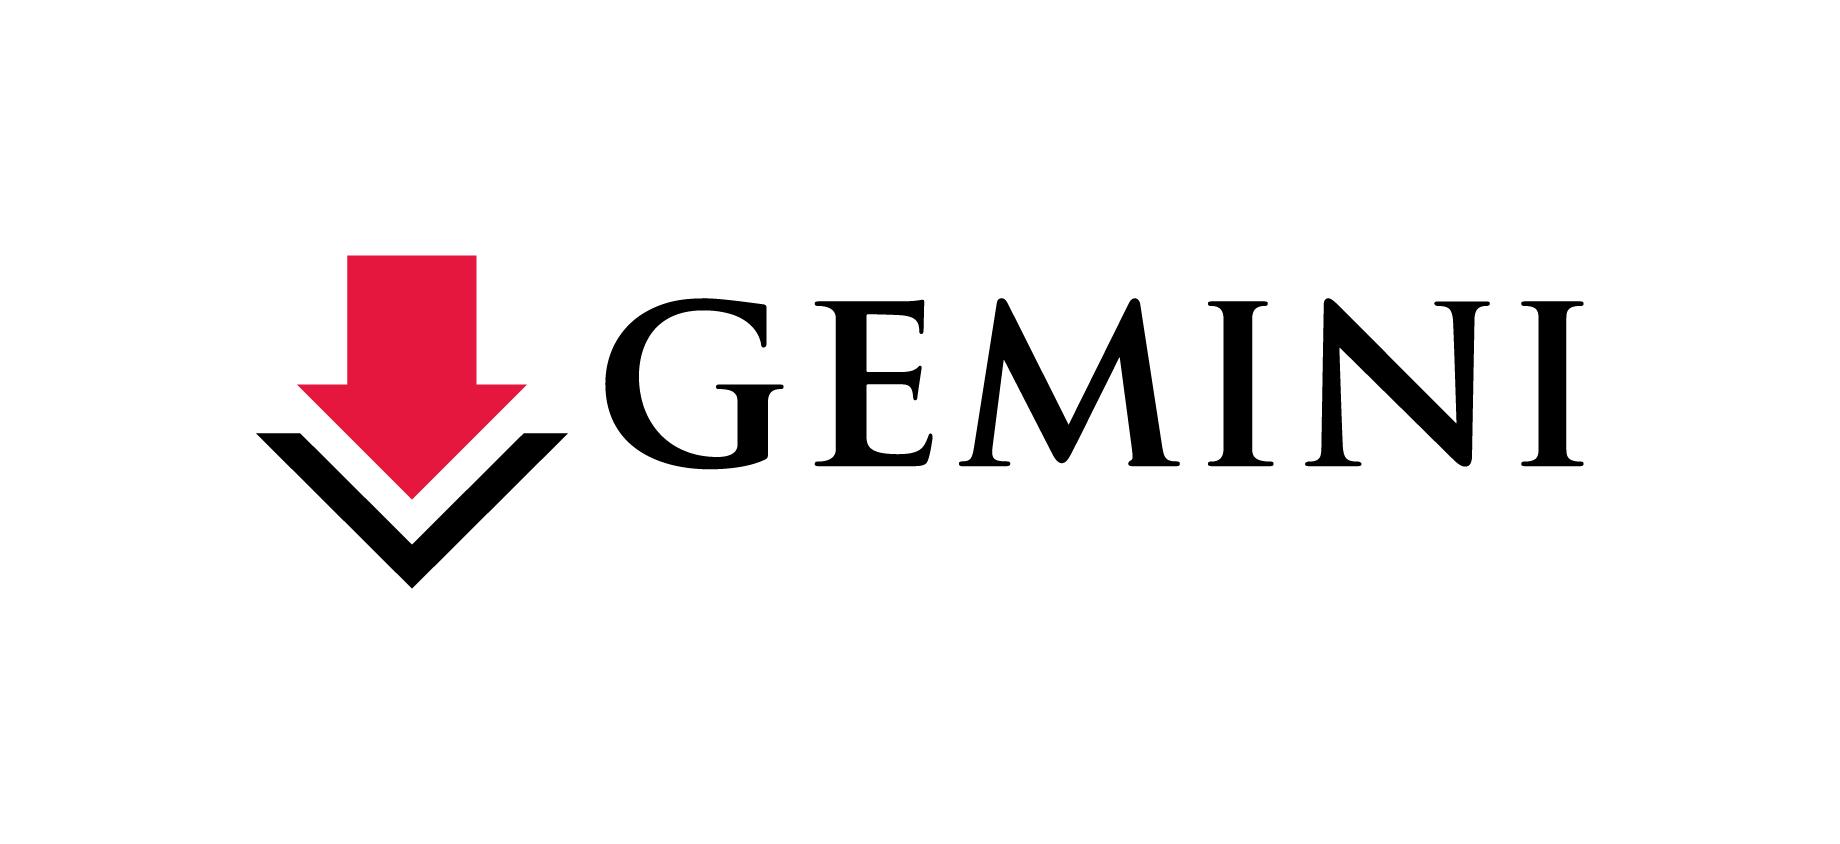 Google Sign Logo - Careers at Gemini | Gemini